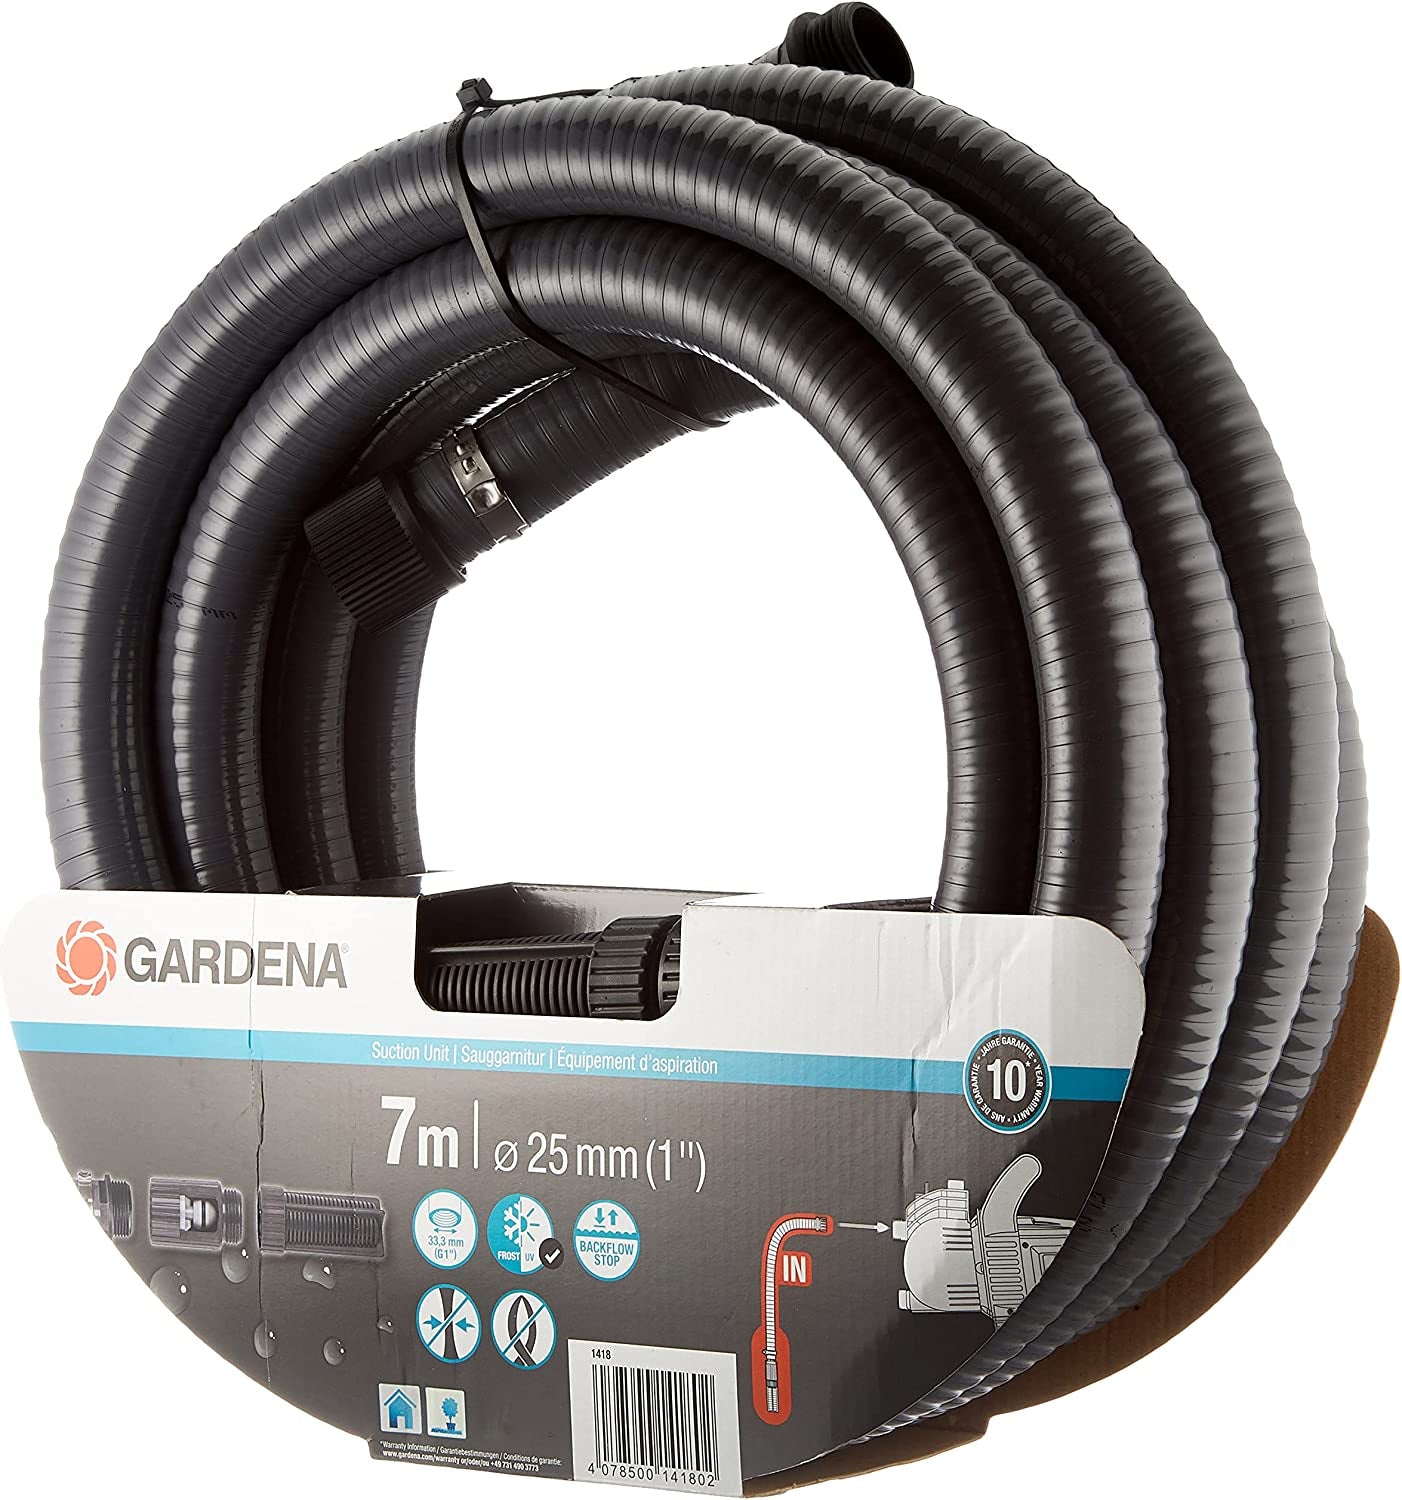 Gardena, GARDENA Suction Unit 7 M, Black, 29.99X19.98X19.98 Cm